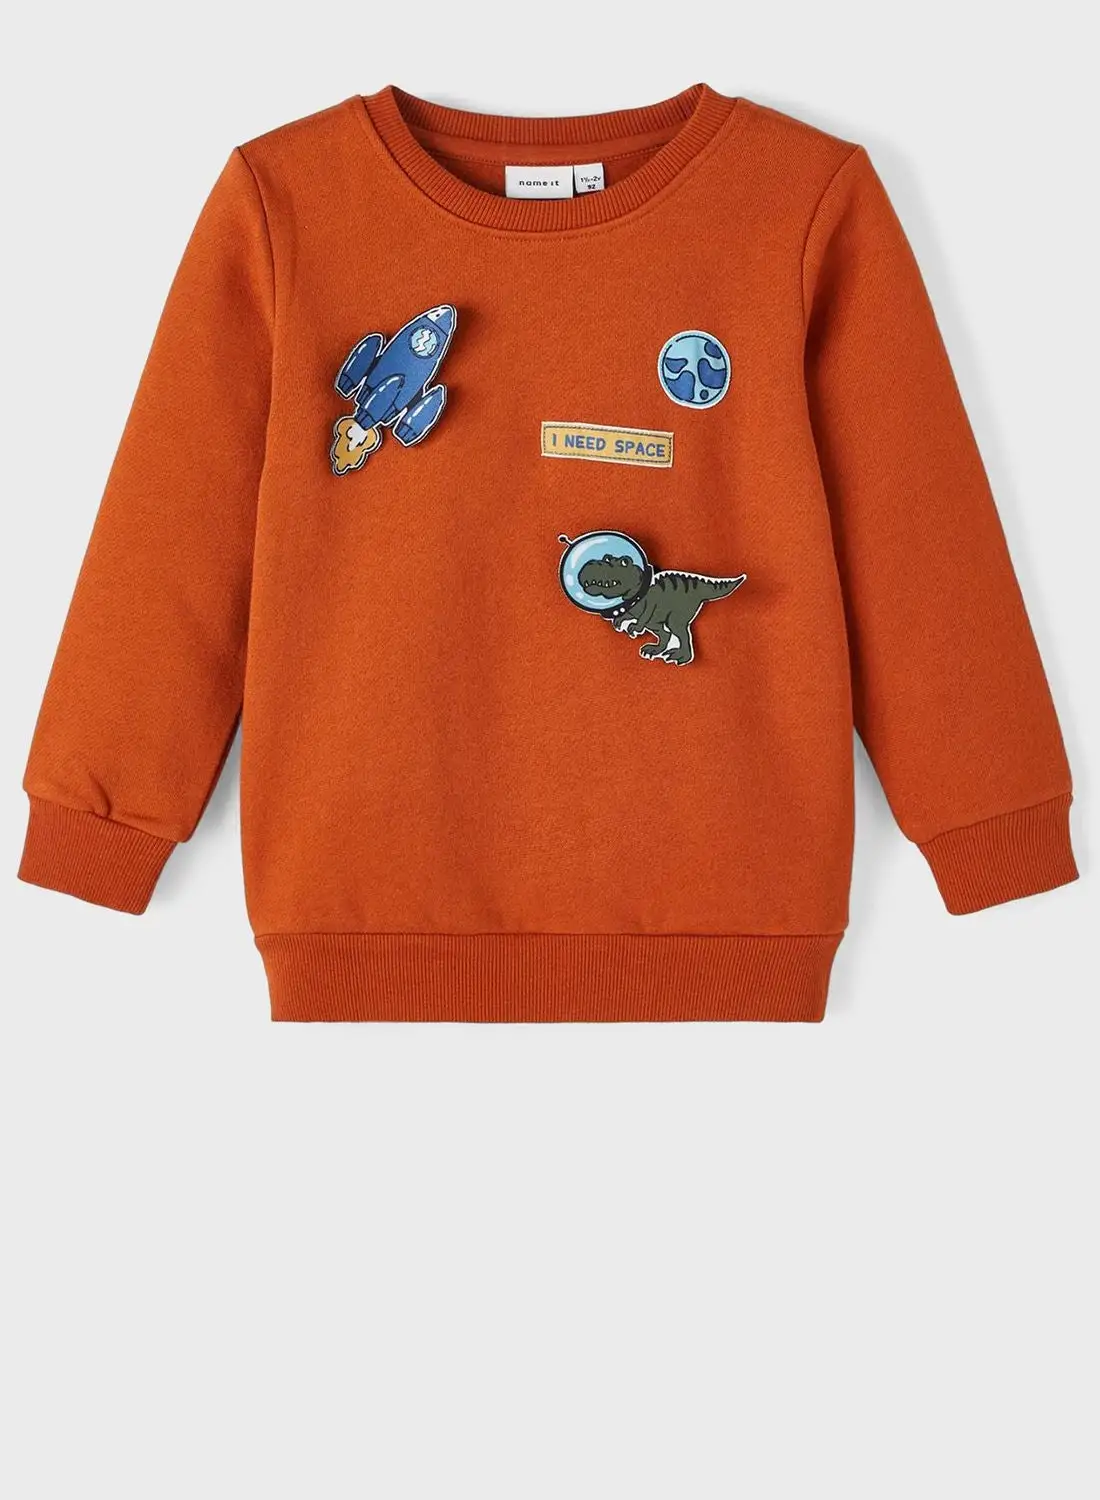 NAME IT Kids Space Print Sweatshirt